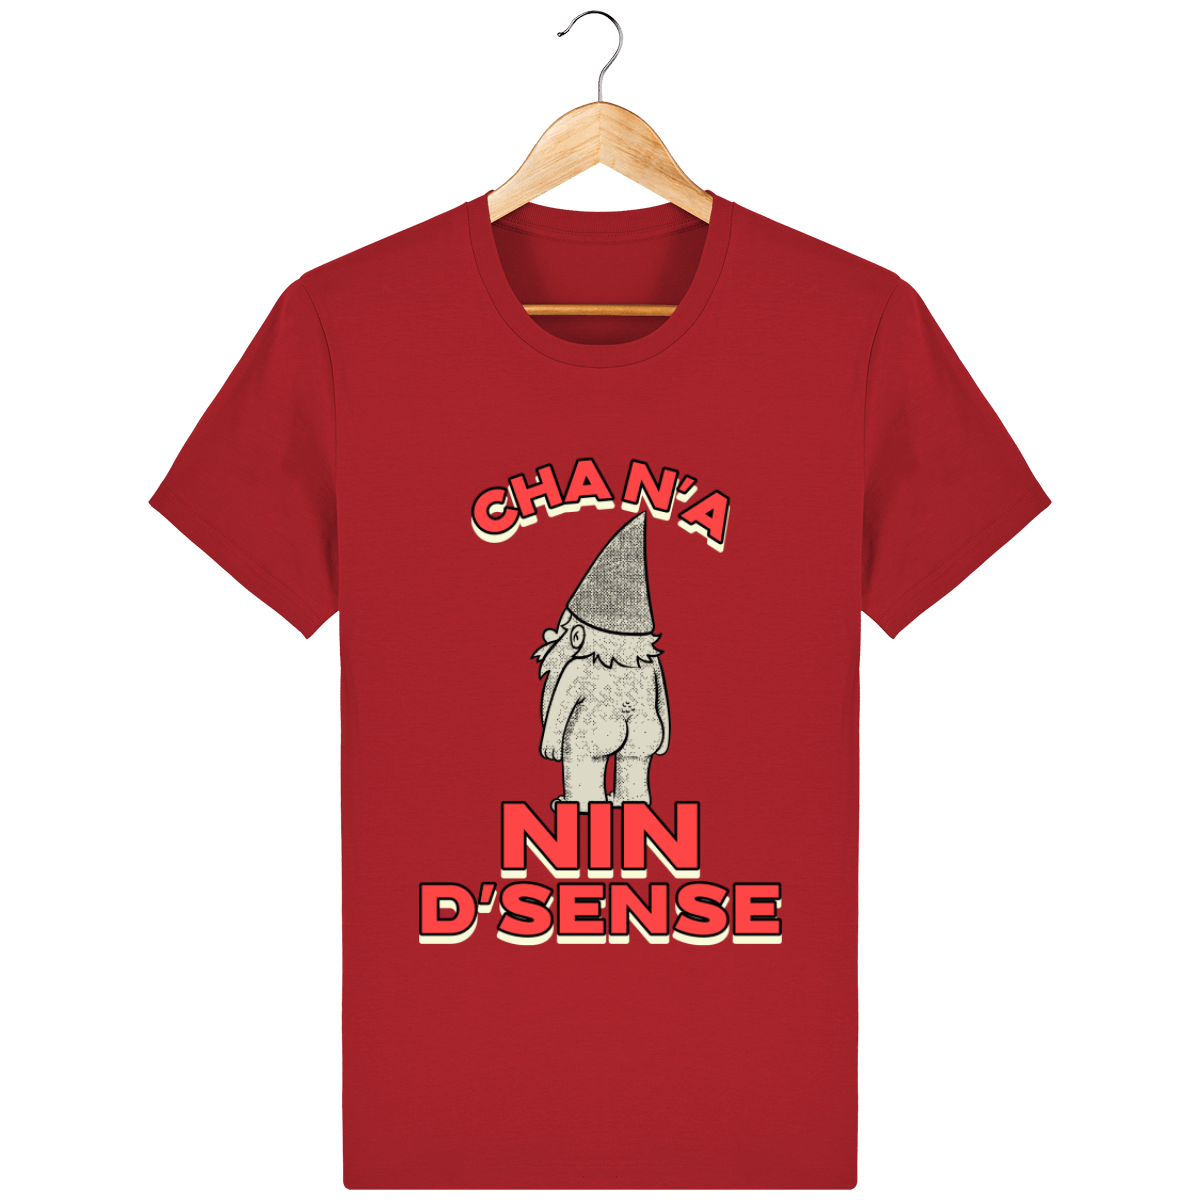 T-shirt - "Cha n'a nin d'sense"